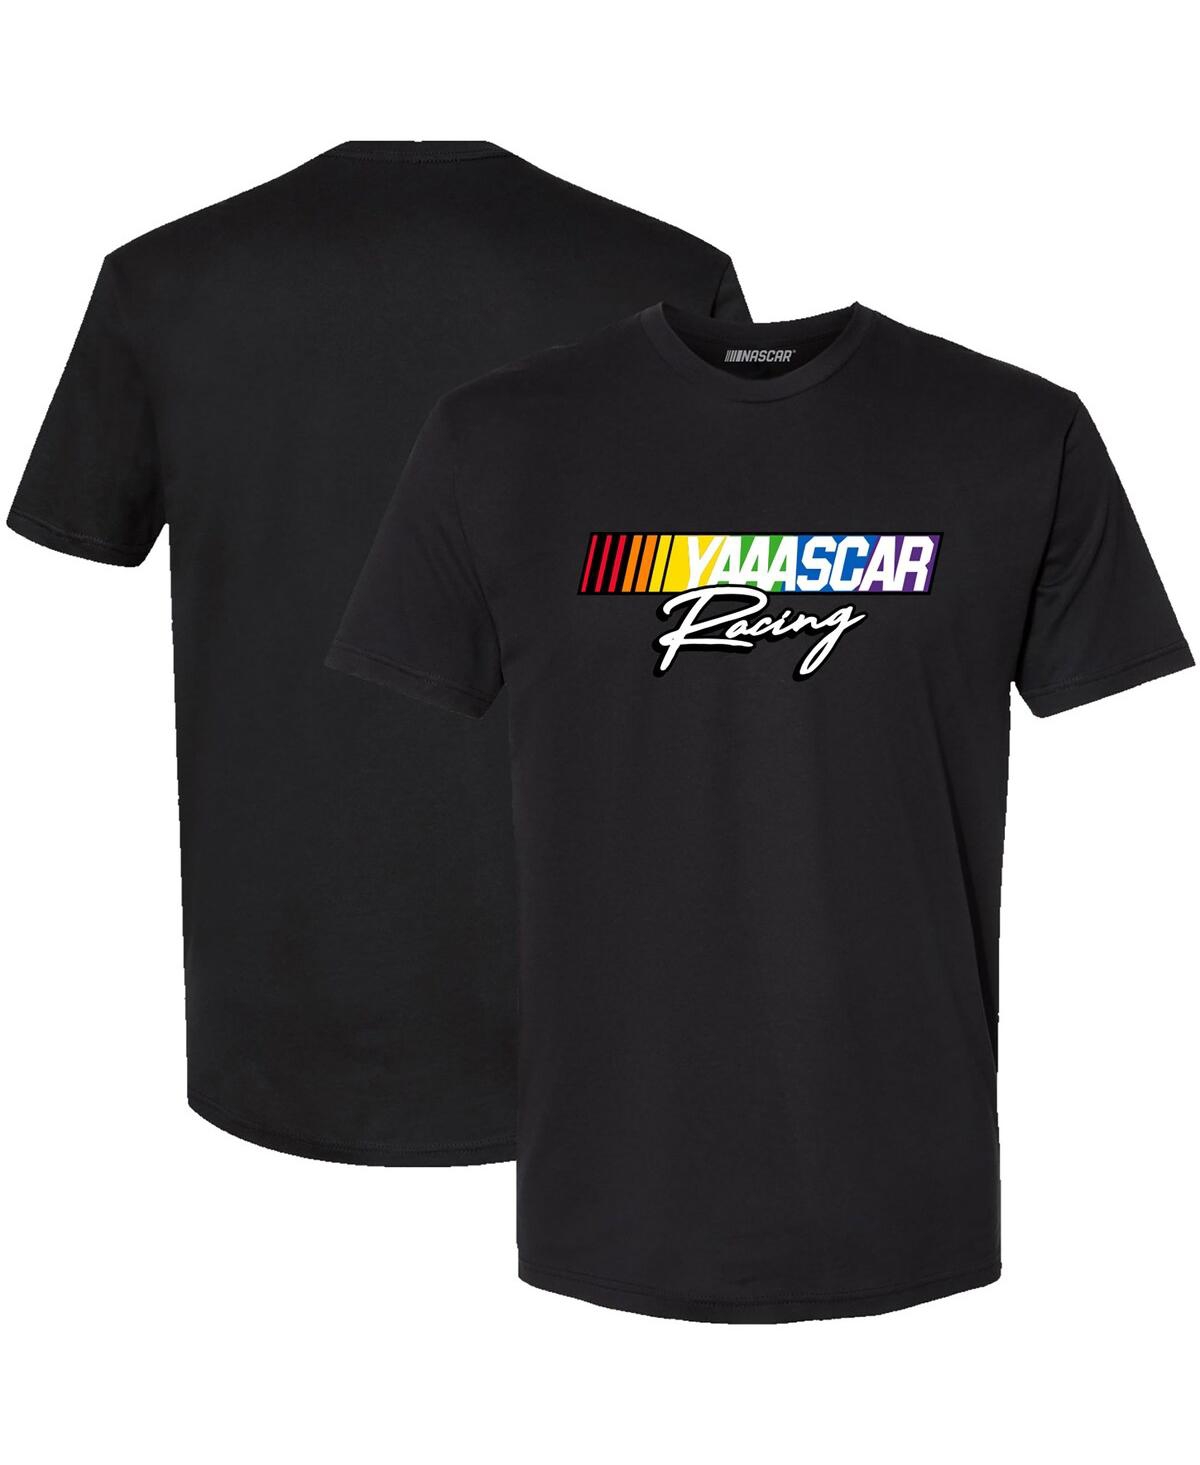 Men's Checkered Flag Sports Black Nascar Racing T-shirt - Black